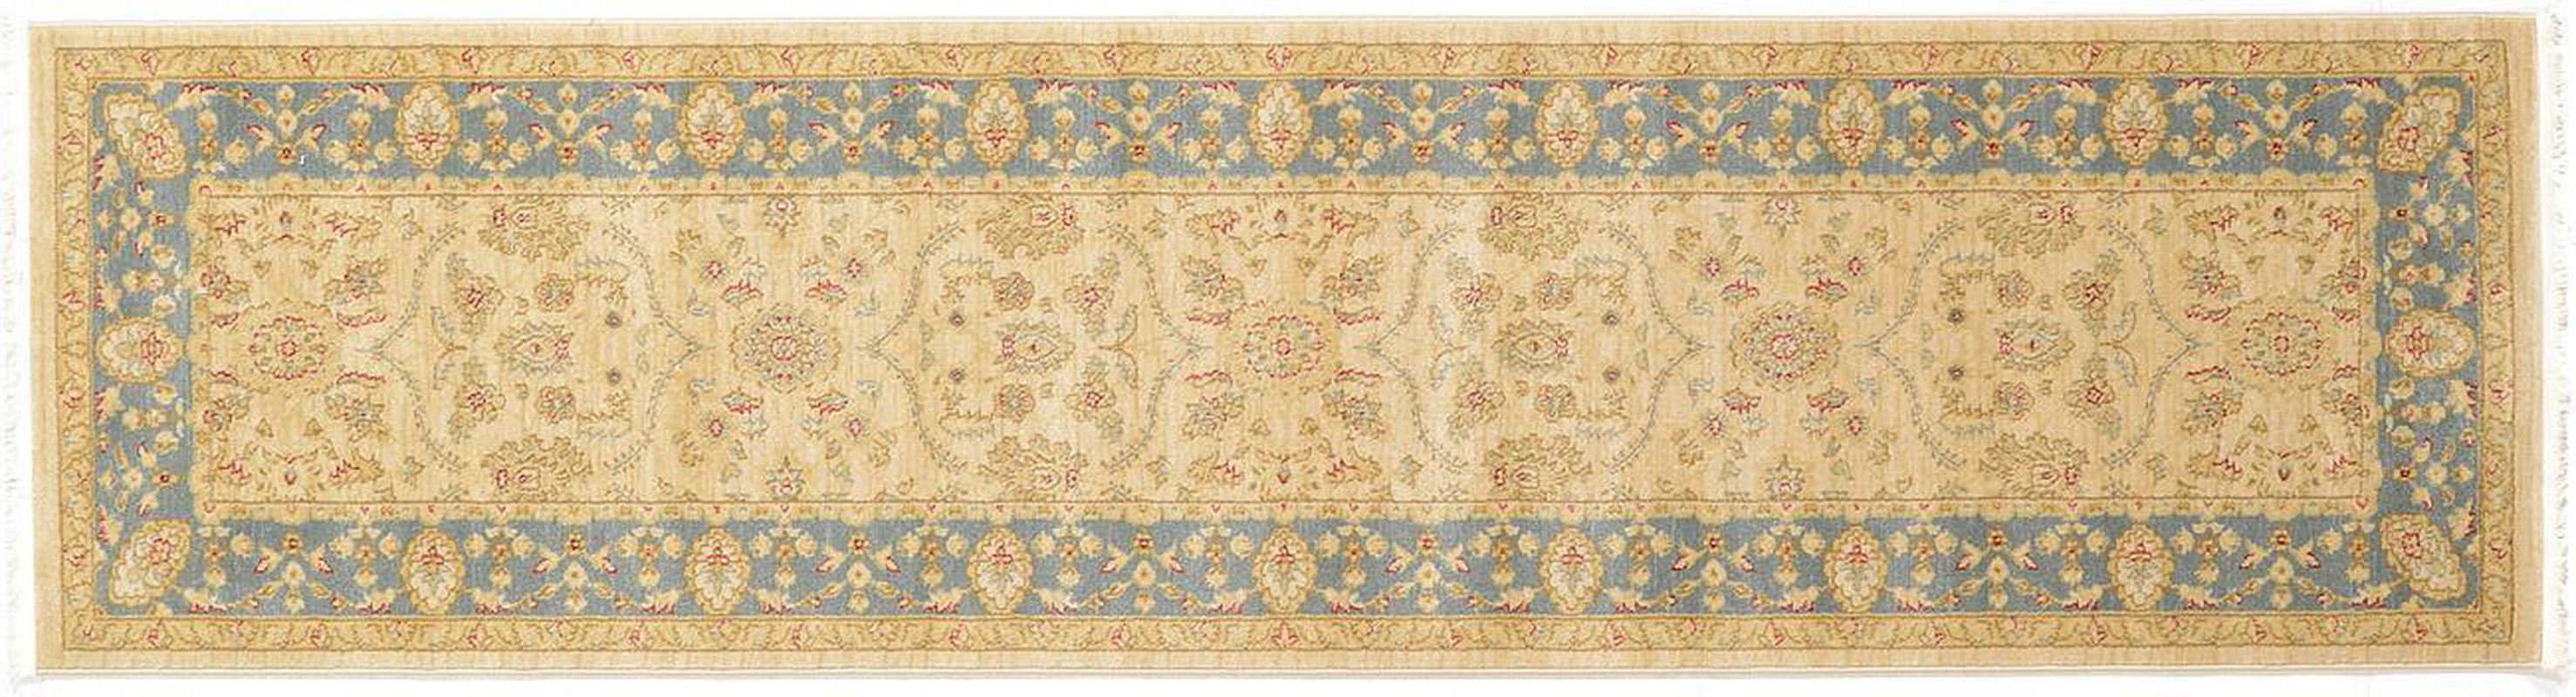 古典经典地毯ID9694